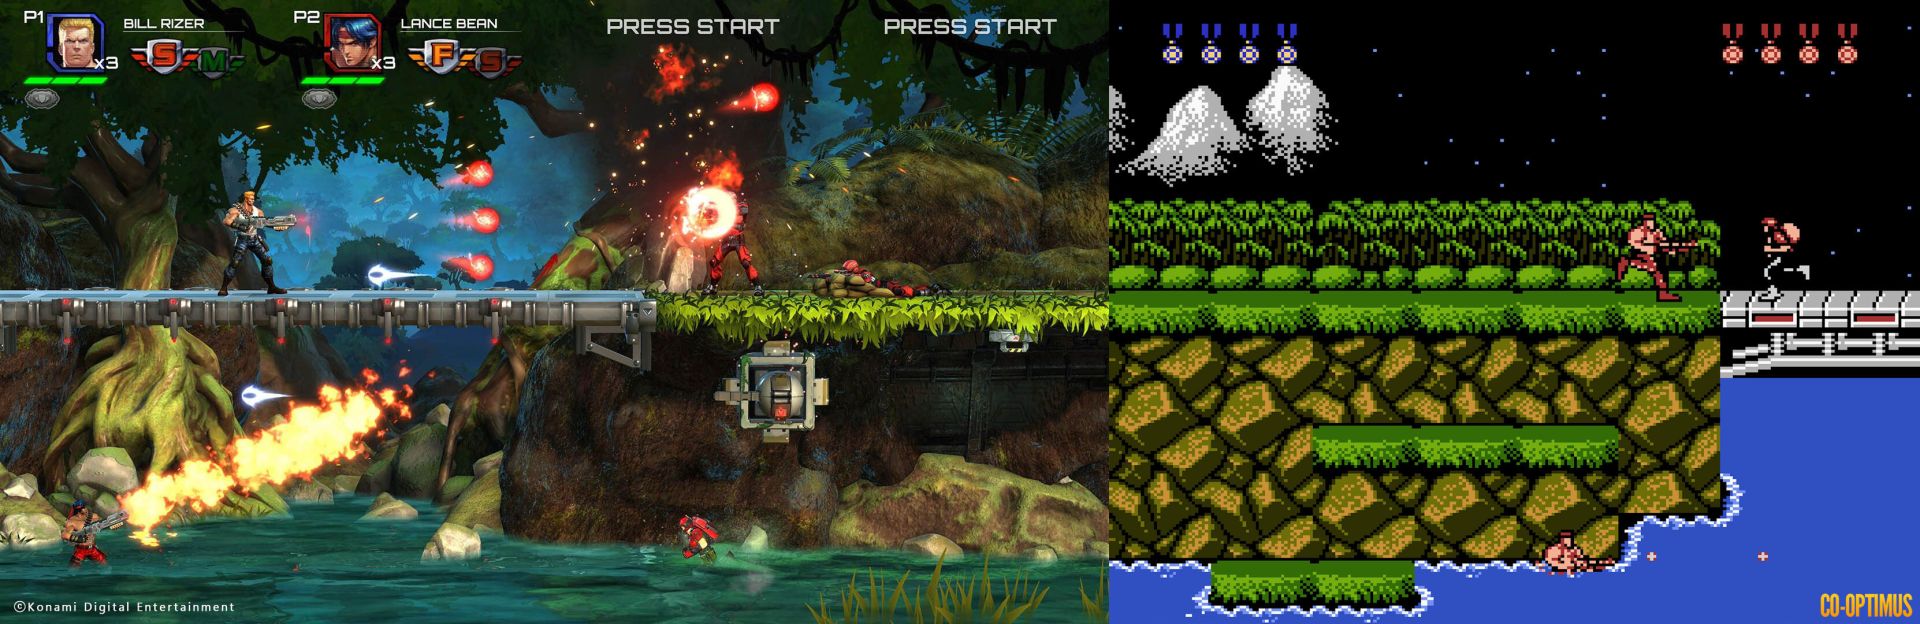 Contra: Operation Galuga NES Famicom screenshot comparison